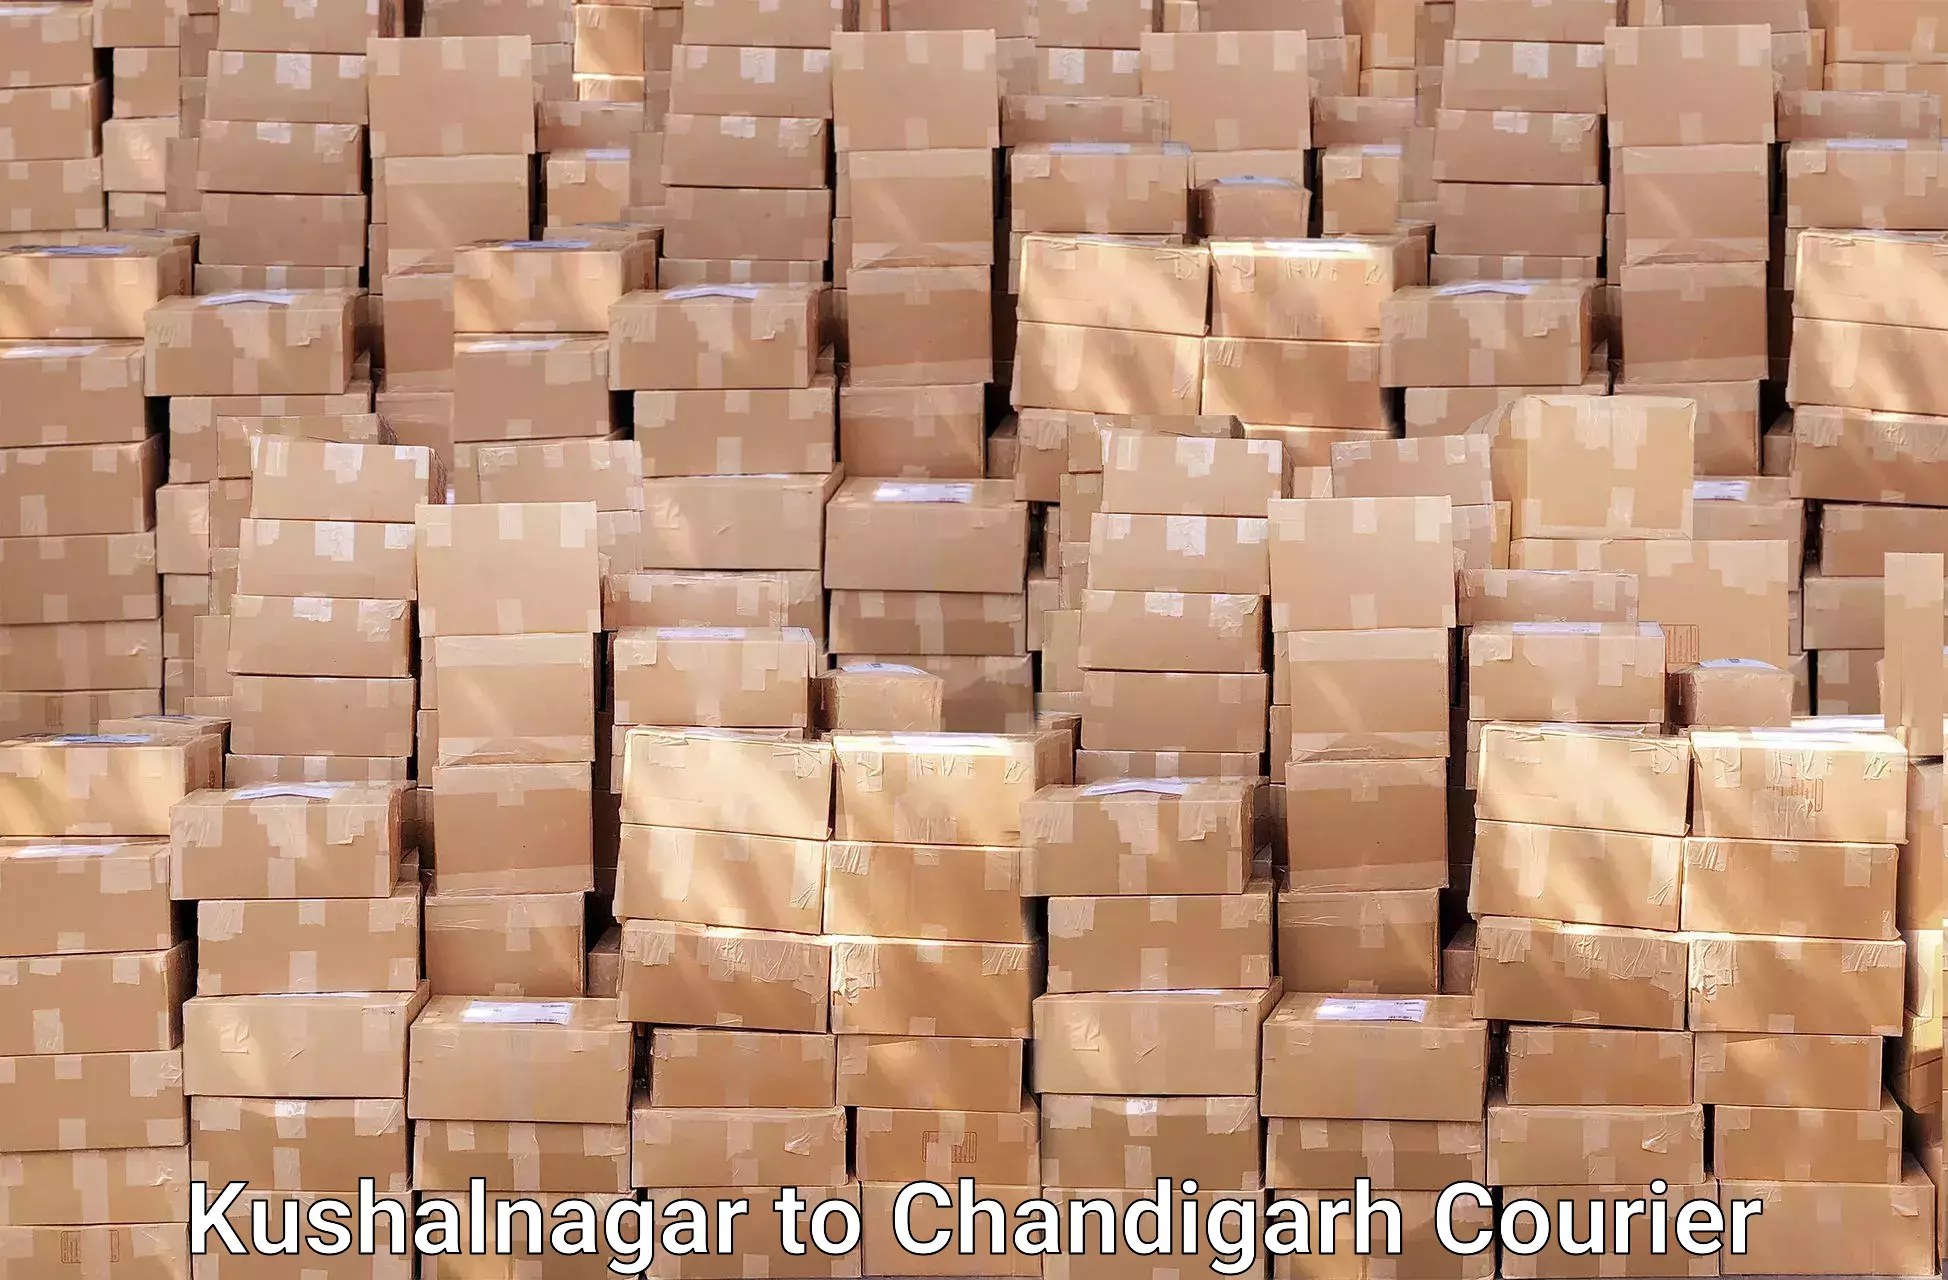 Efficient relocation services Kushalnagar to Chandigarh